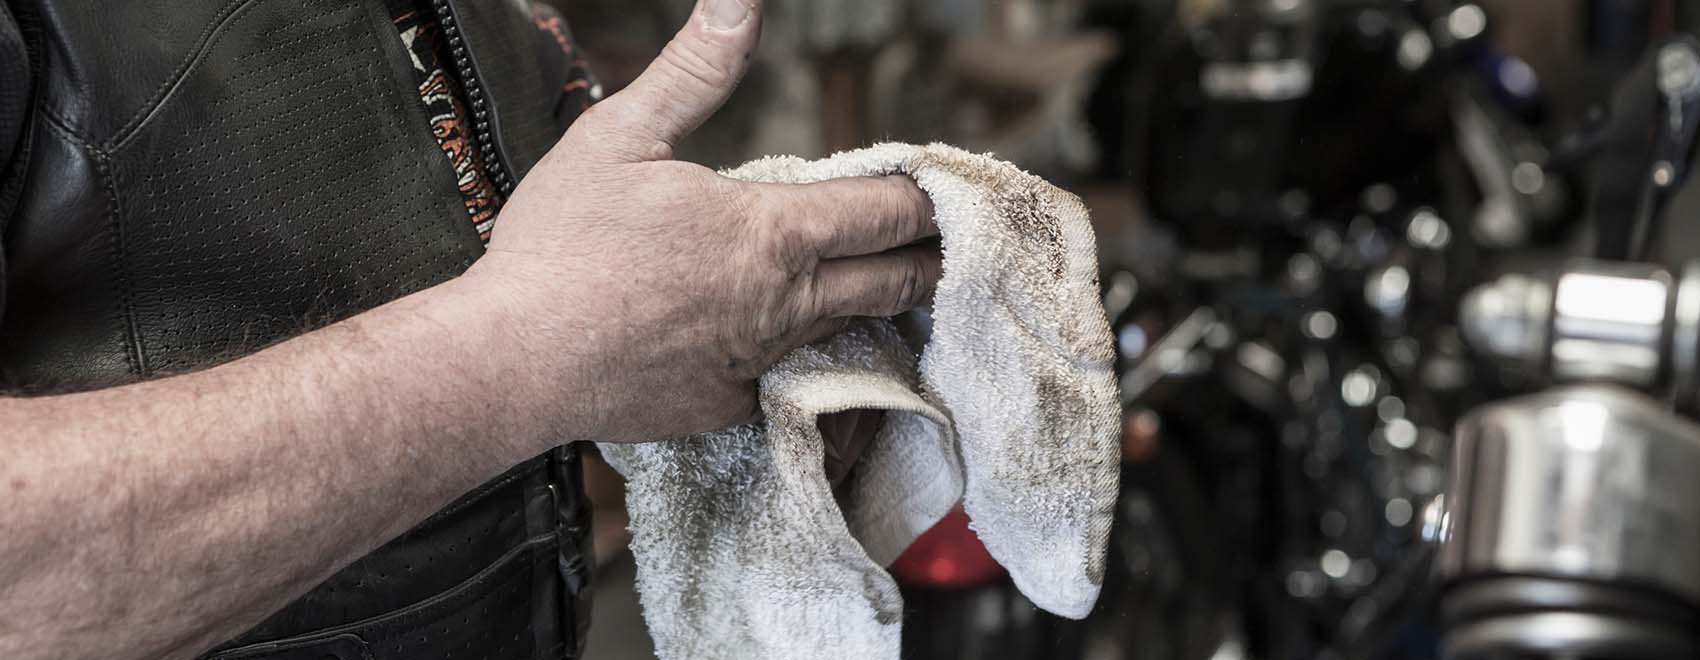 man repairing motorcycle wiping hands